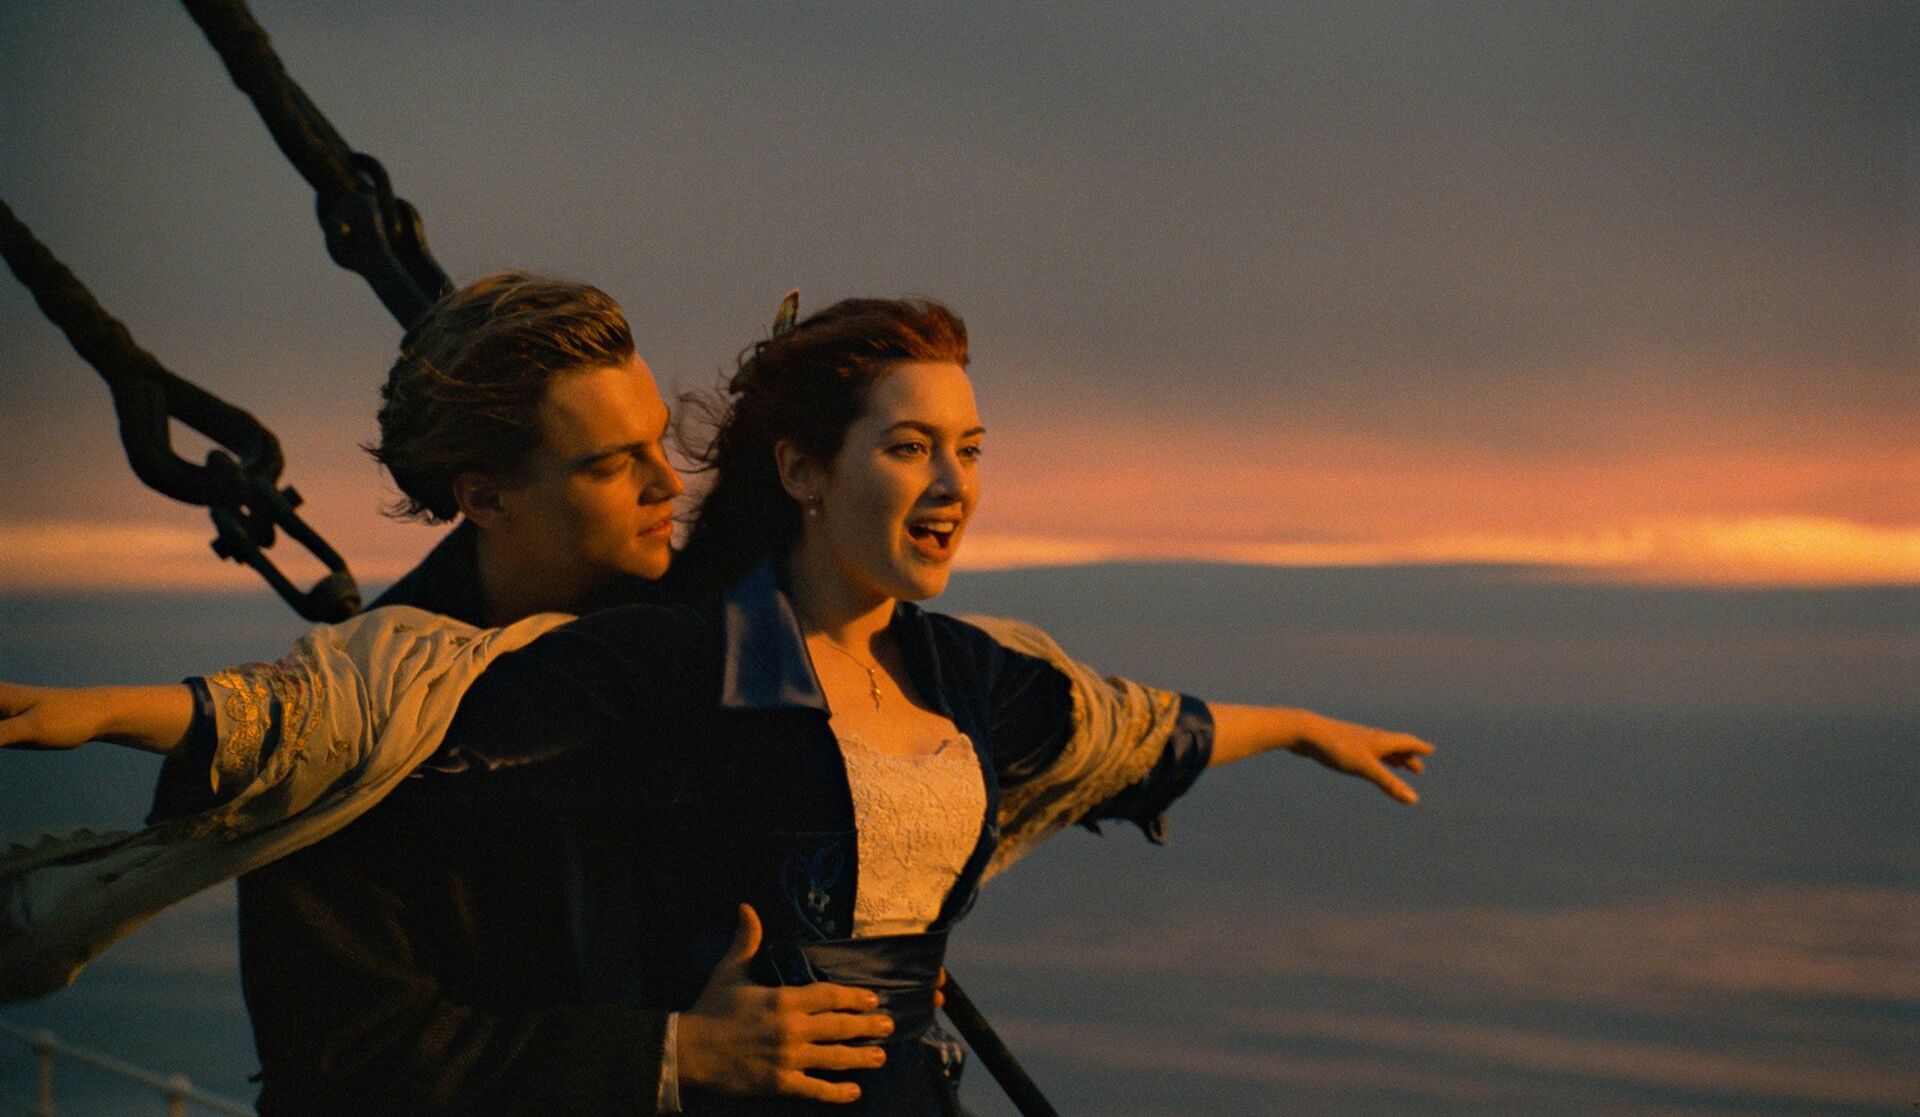 Ya es diciembre y aunque no es 25, o sea Navidad, hoy la enternecedora historia de Titanic volverá a la pantalla chica.